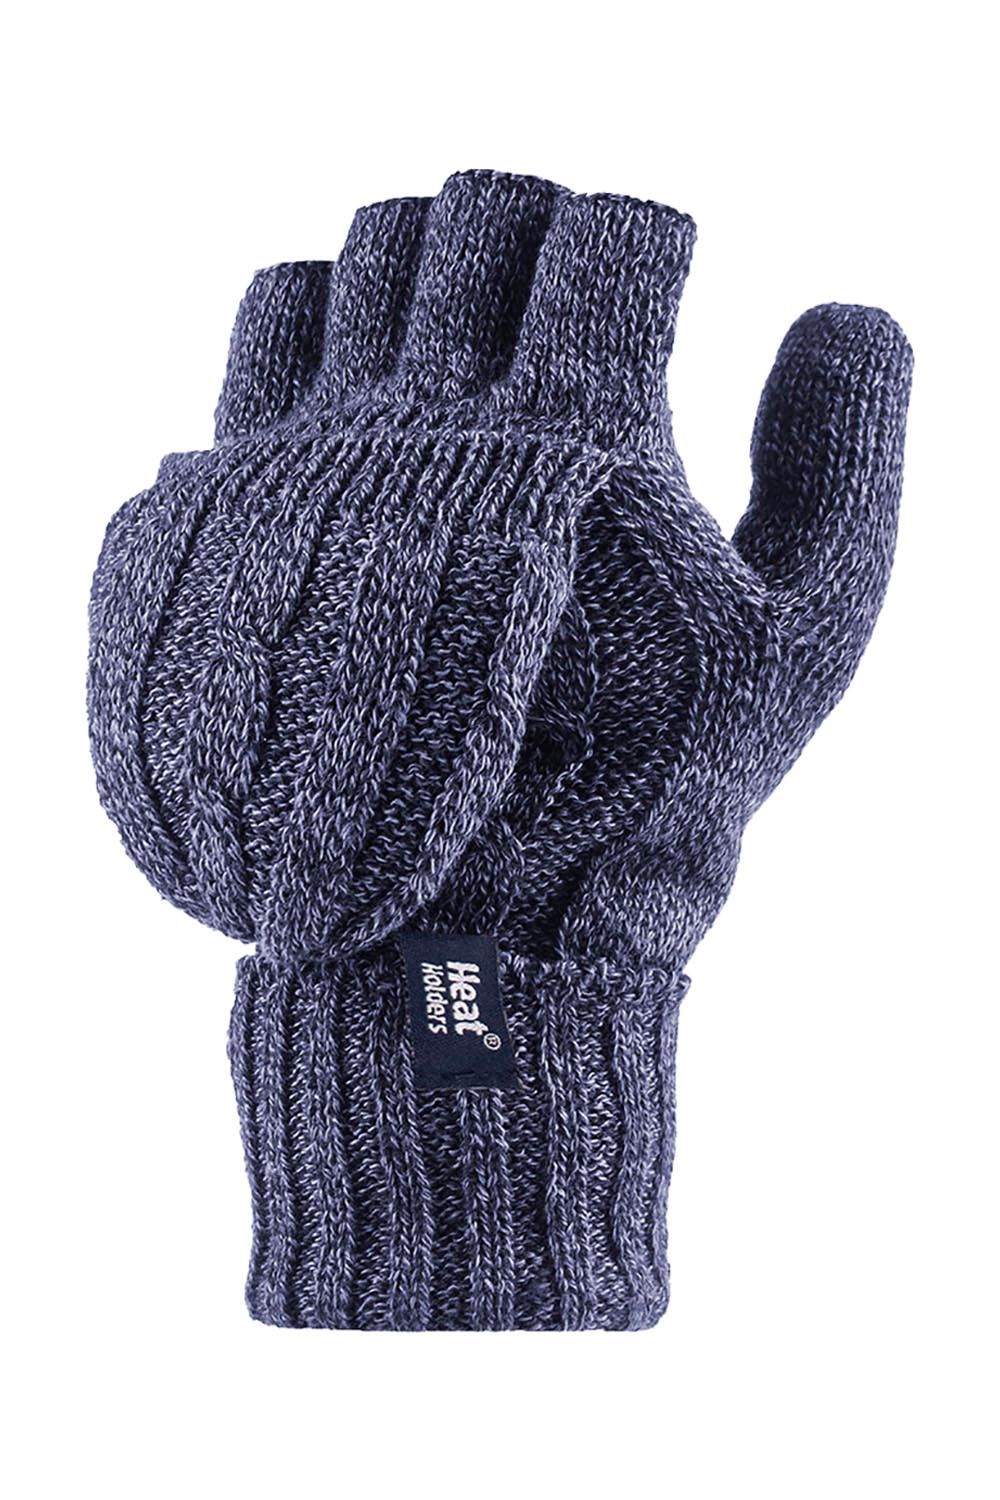 Womens Knit Thermal Fingerless Converter Gloves